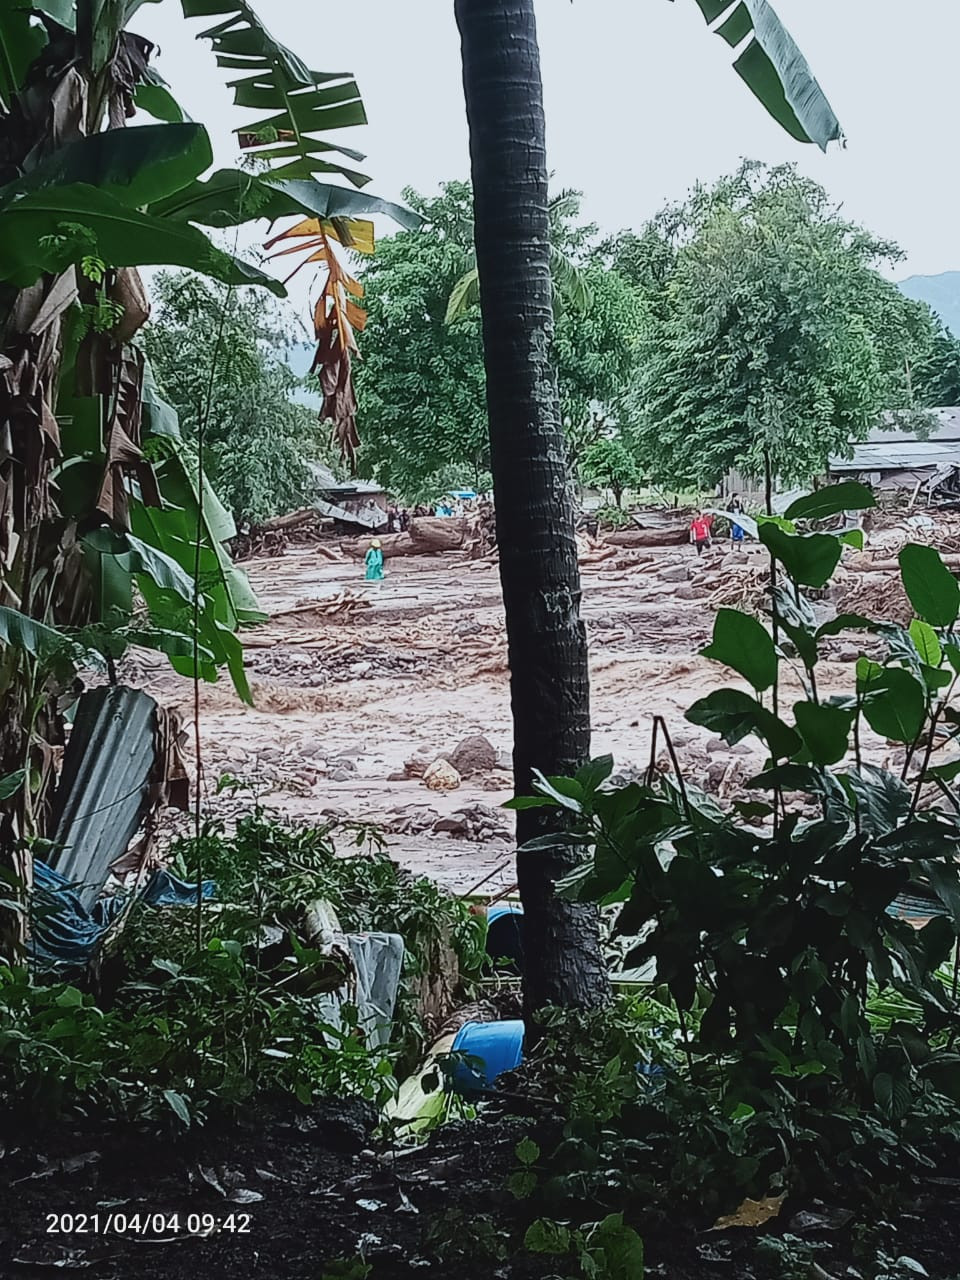 [Update] - Sebanyak 23 Warga Meninggal Dunia Ditemukan Pascabanjir Bandang Flores Timur